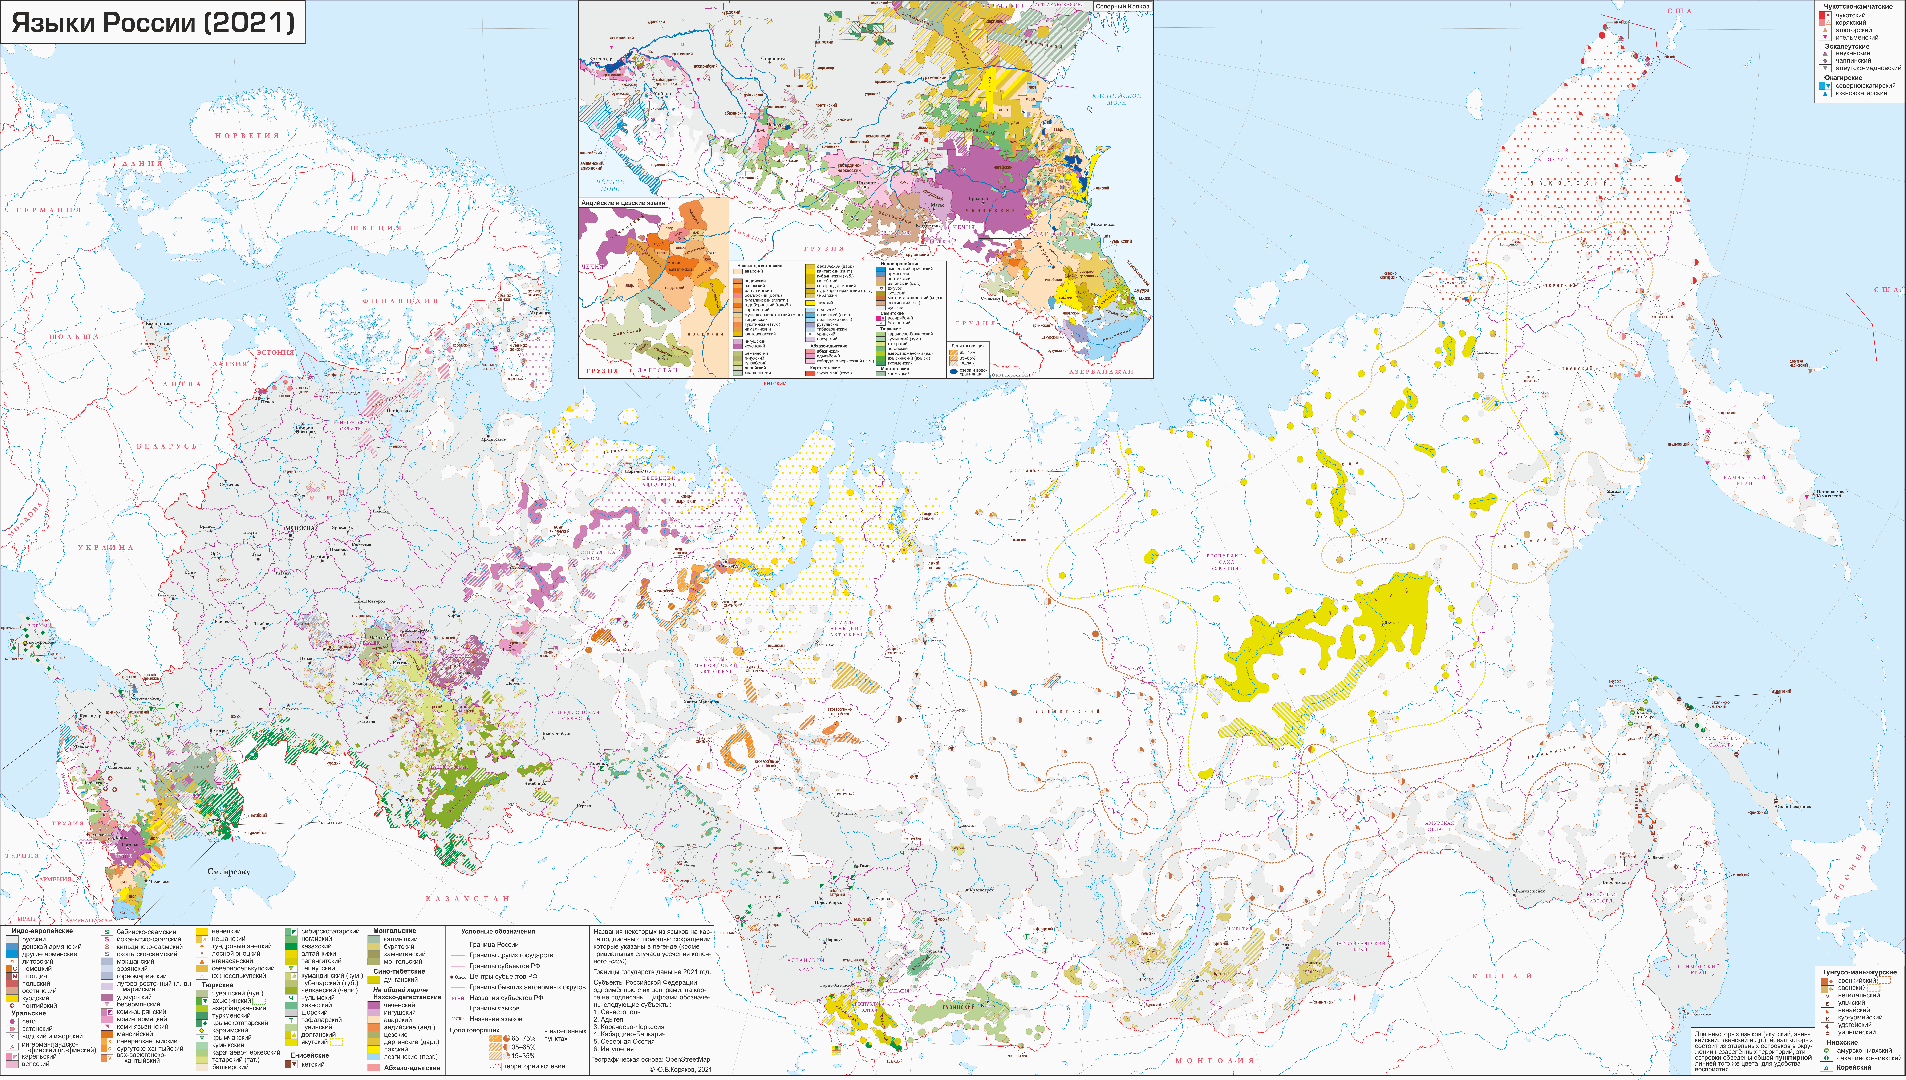 Карта языков России по состоянию на 2021 год. Автор Юрий Коряков